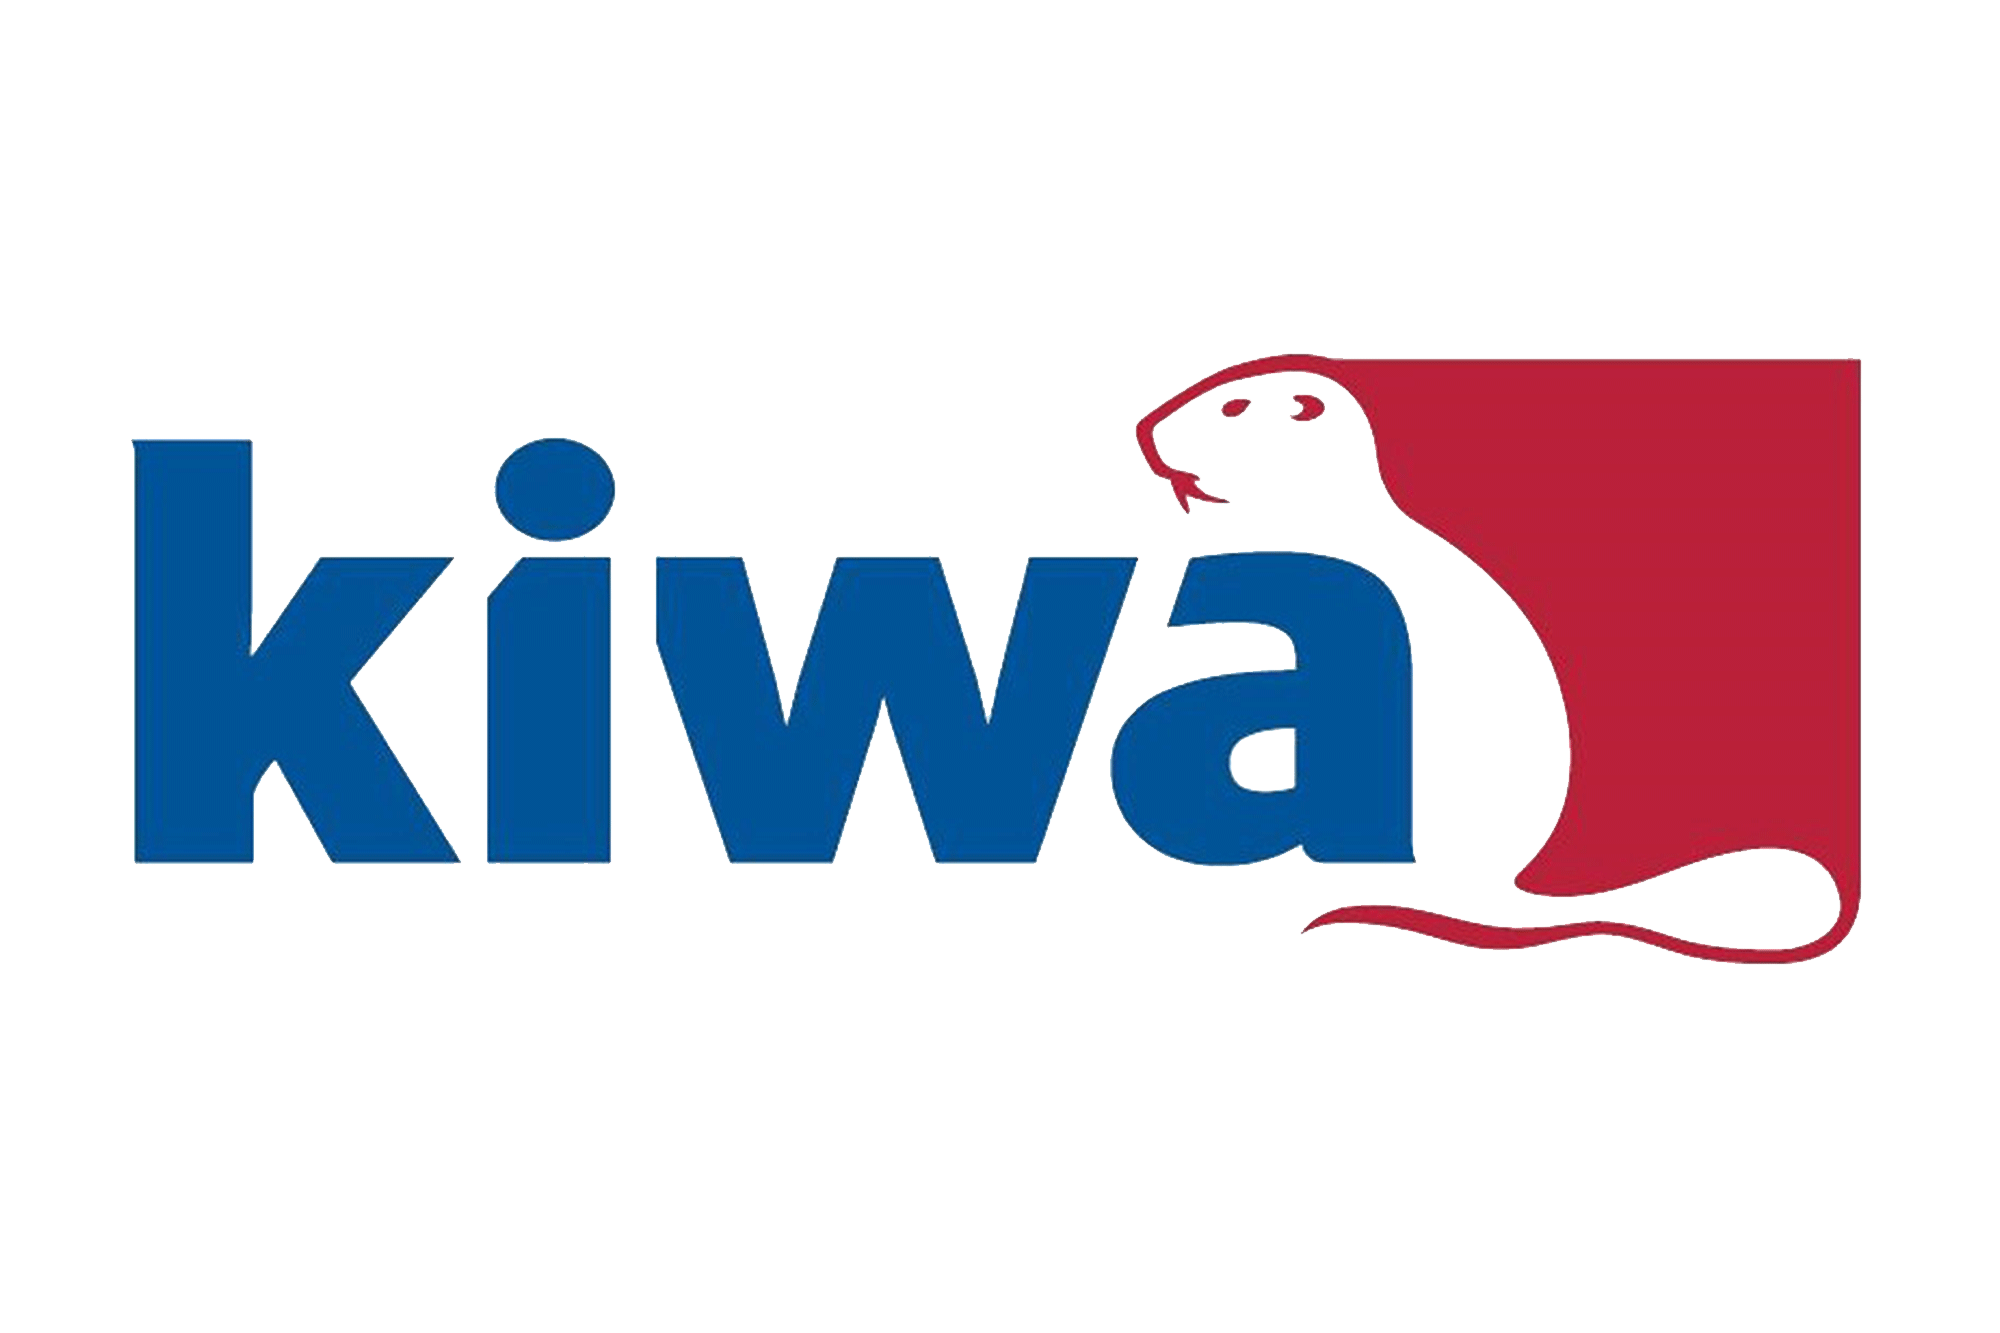 KIWA